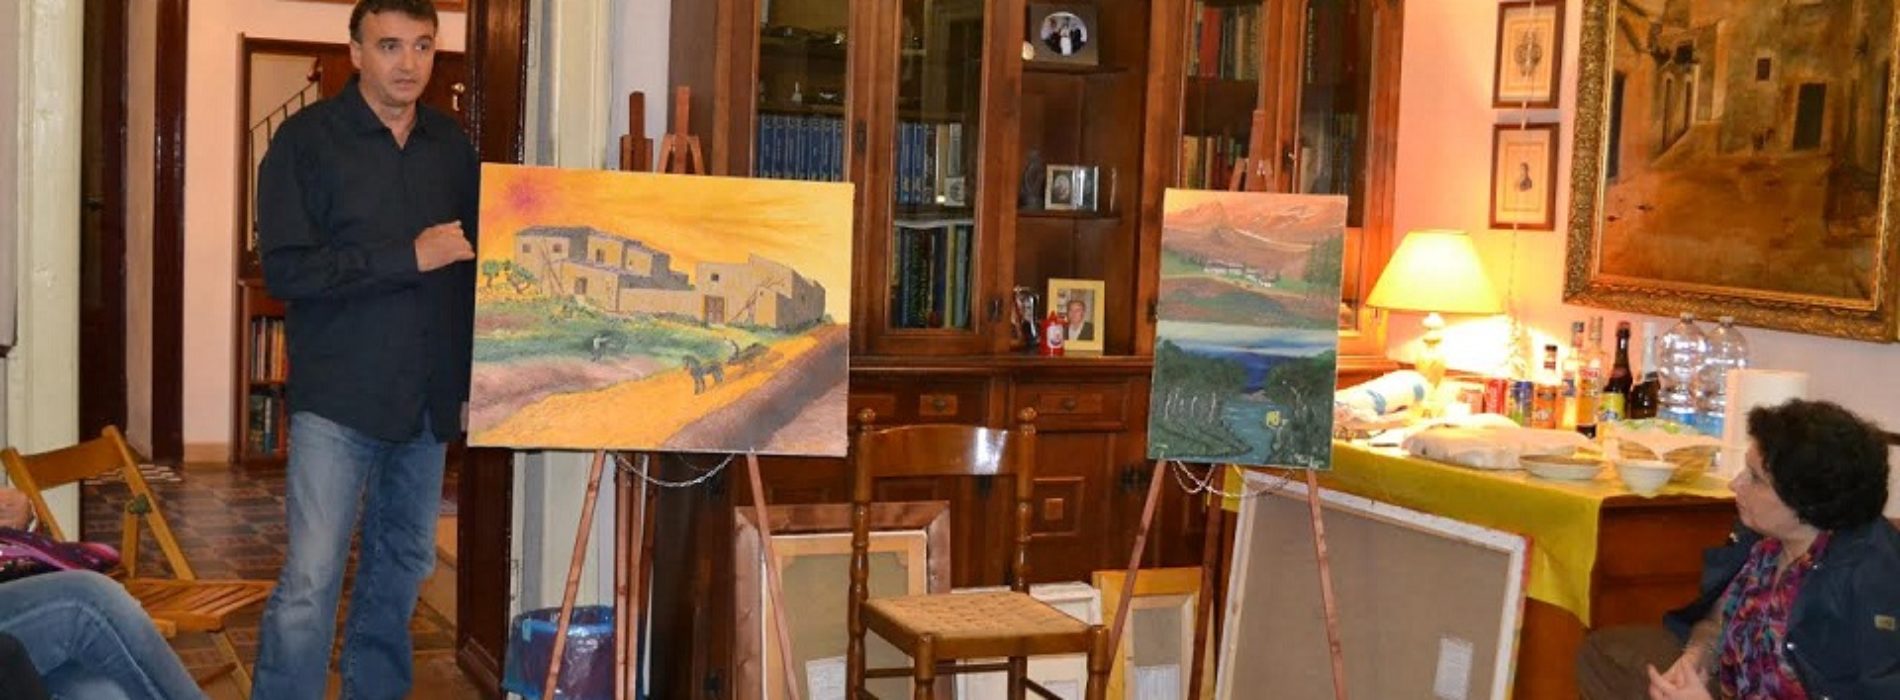 Il Salotto artistico-letterario “Civico 49” ospita il pittore Rocco Paci